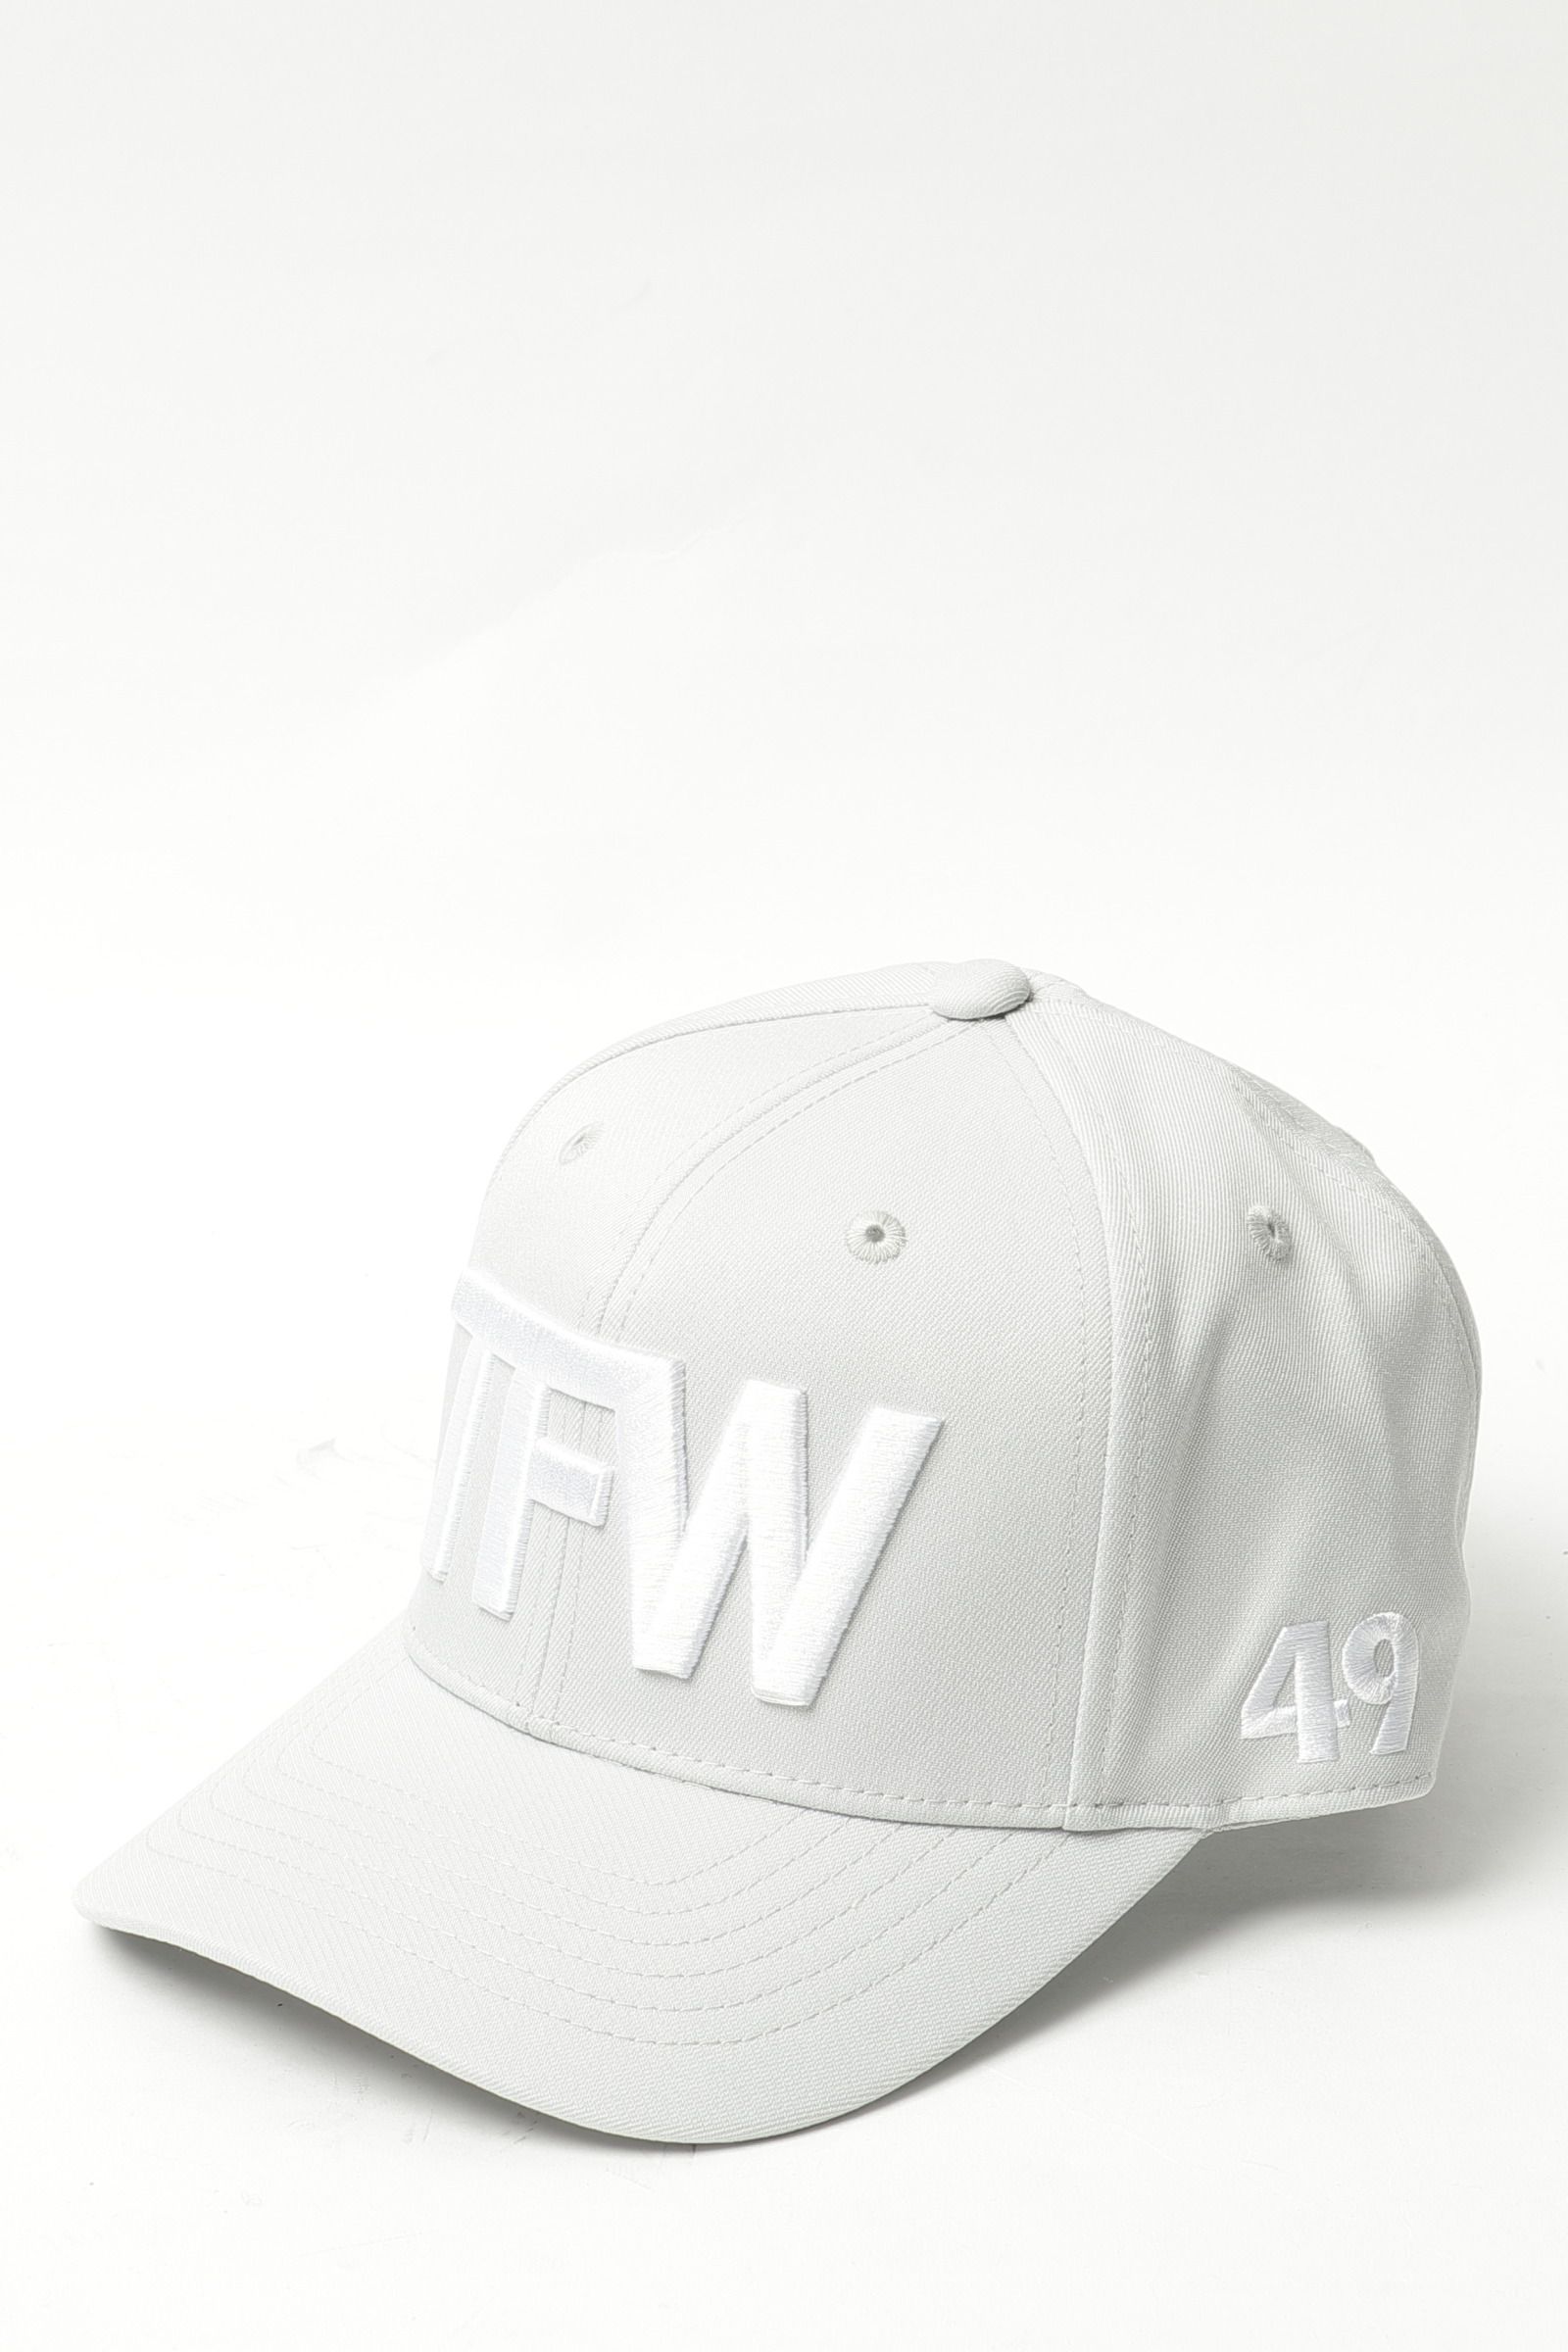 TFW49 - TFW CAP ポリエステル コットン TFWロゴ キャップ / シルバー